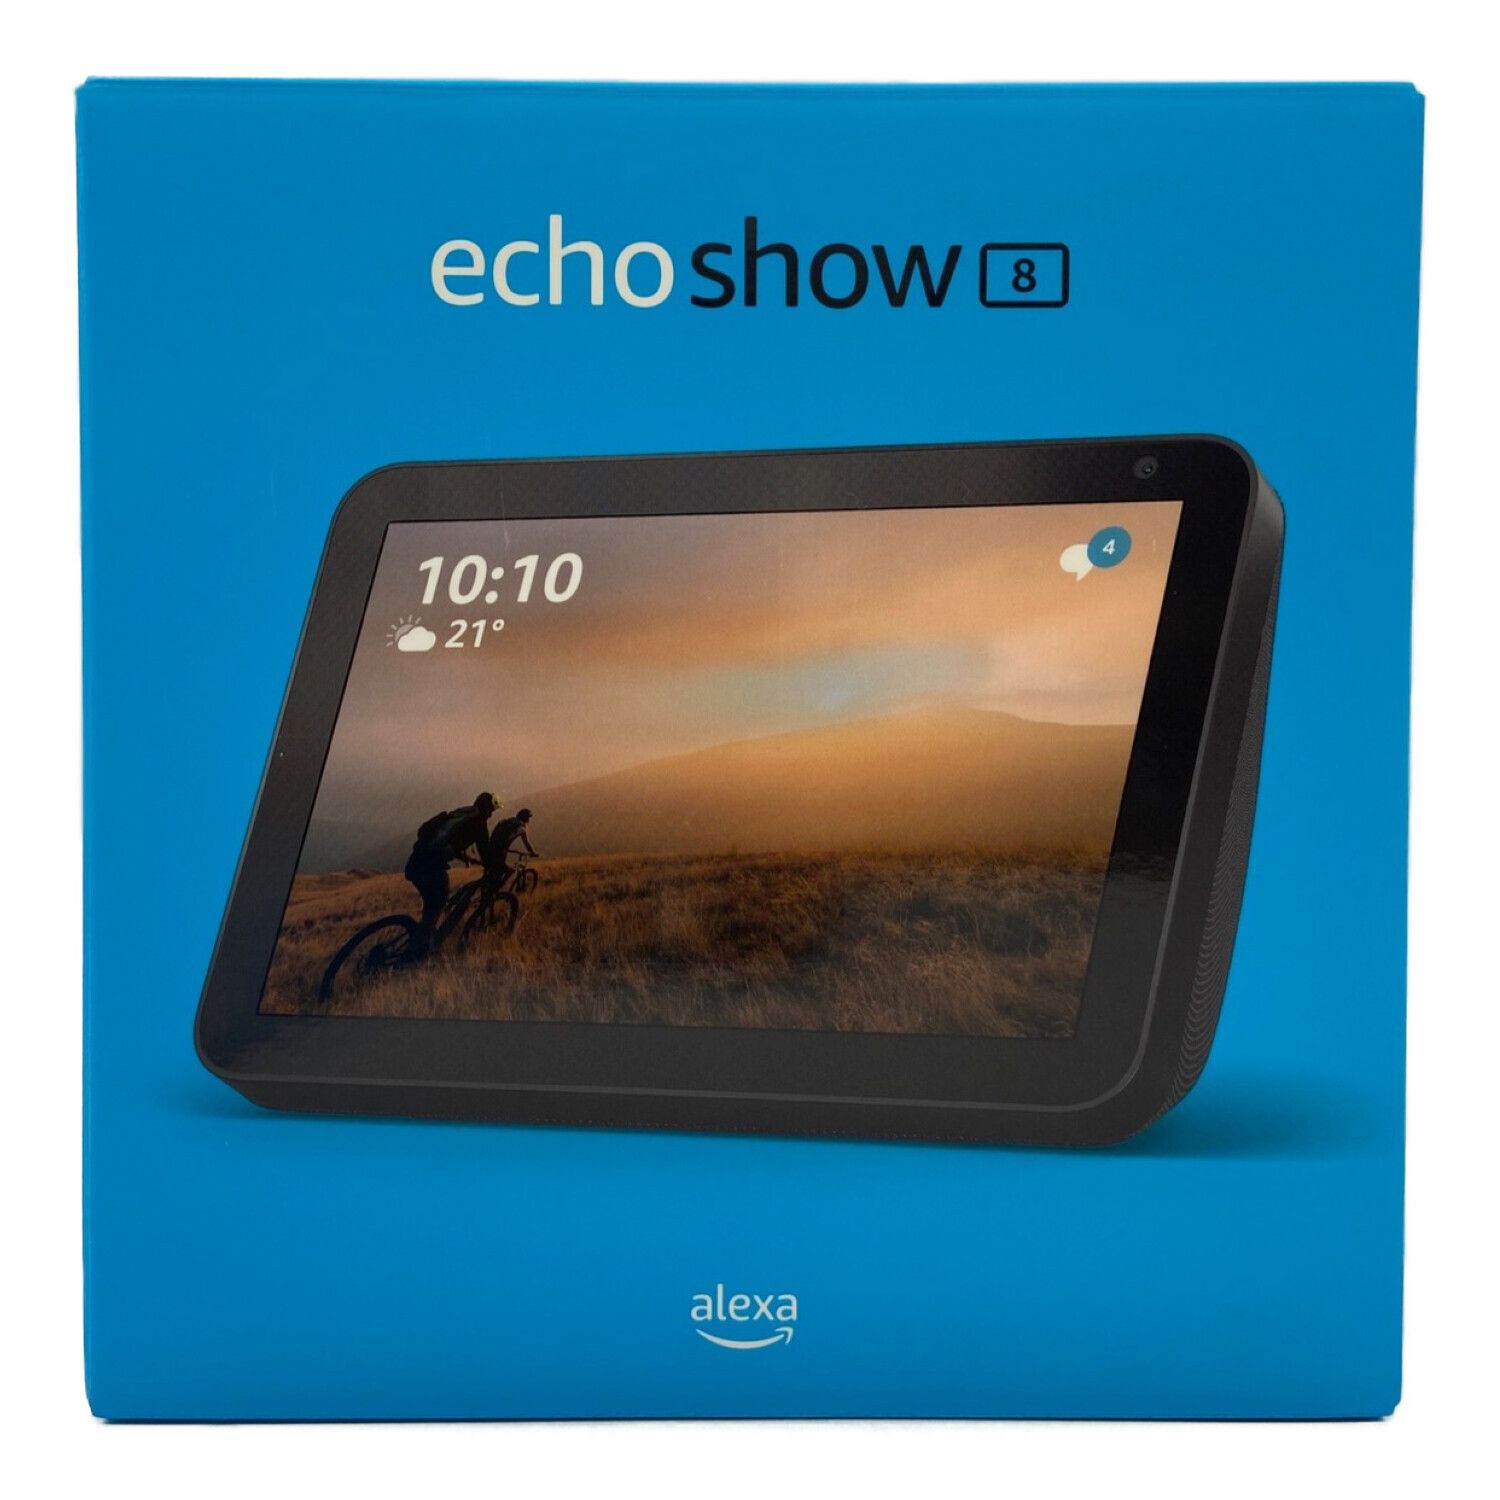 週末セール Echo Show 第2世代スマートスピーカー with Alexa